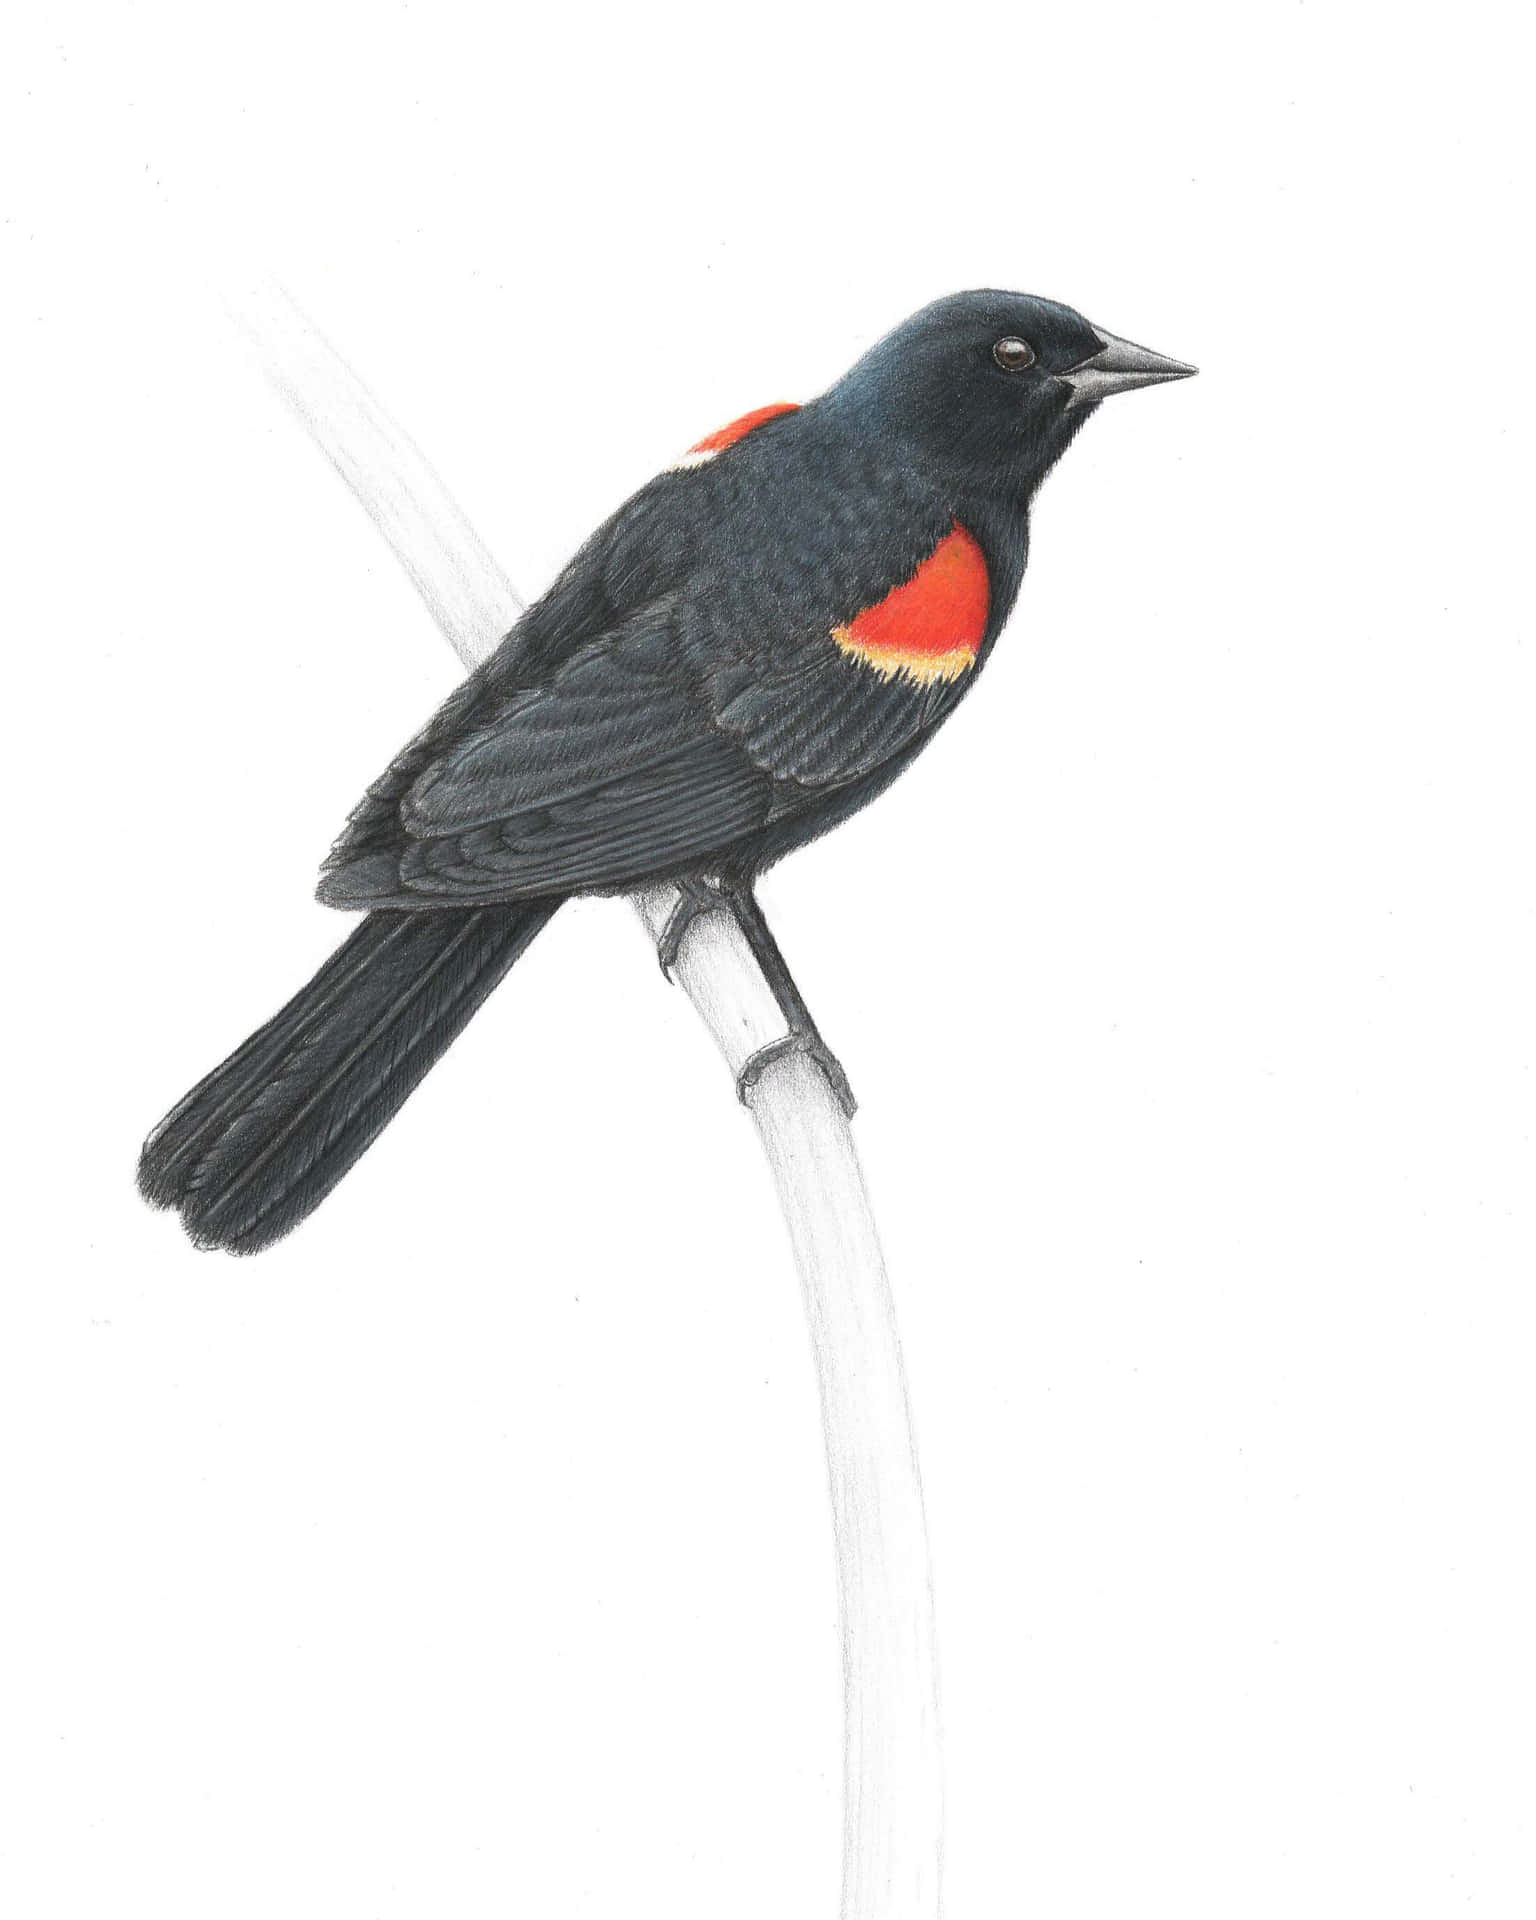 Redwing Blackbird Illustration Wallpaper